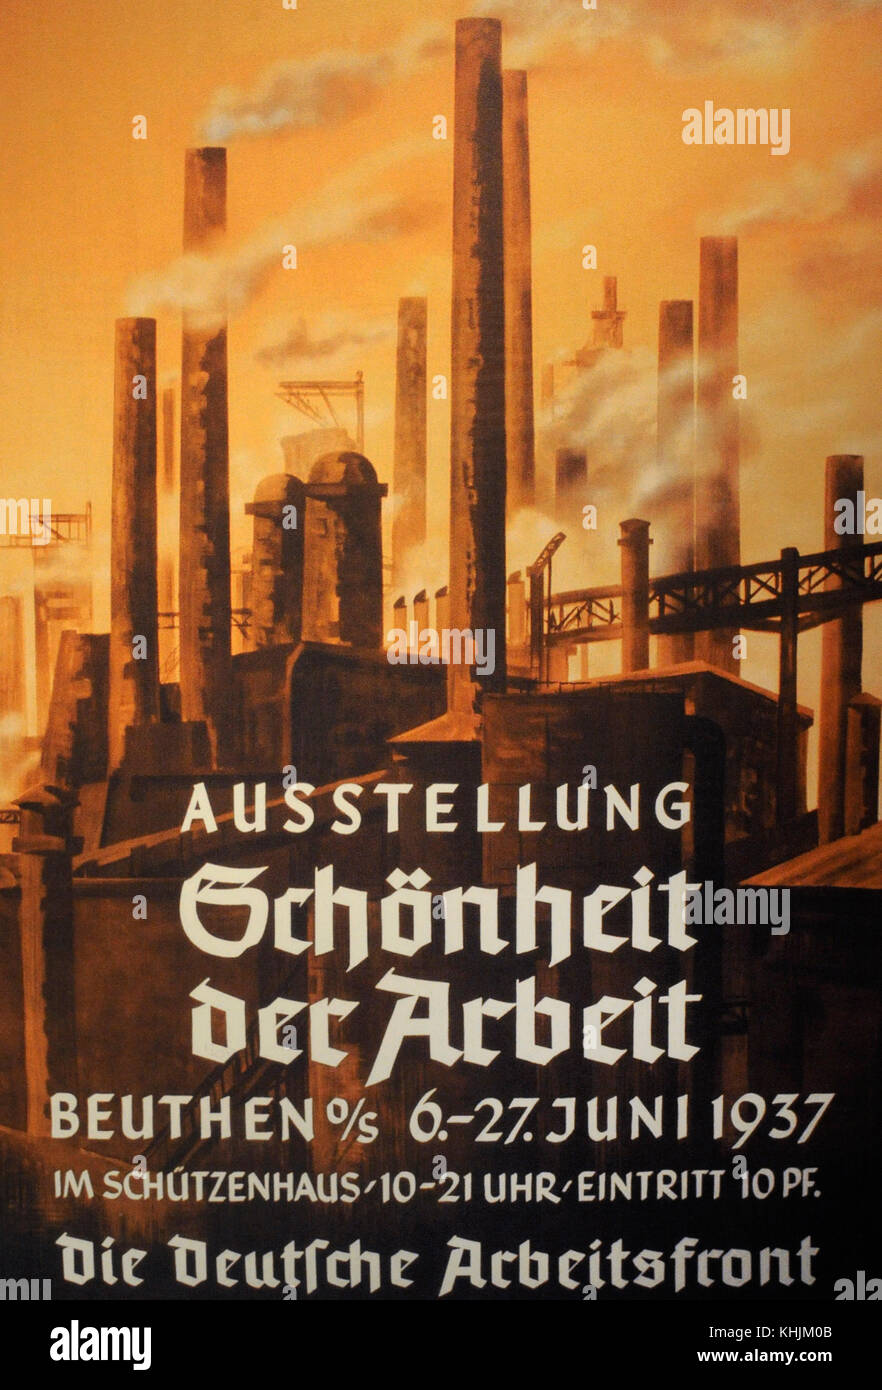 Histoire de nazisme. la propagande nazie, affiche de l'exposition beauté du travail organisé en 1937 à Bytom, Pologne. Banque D'Images